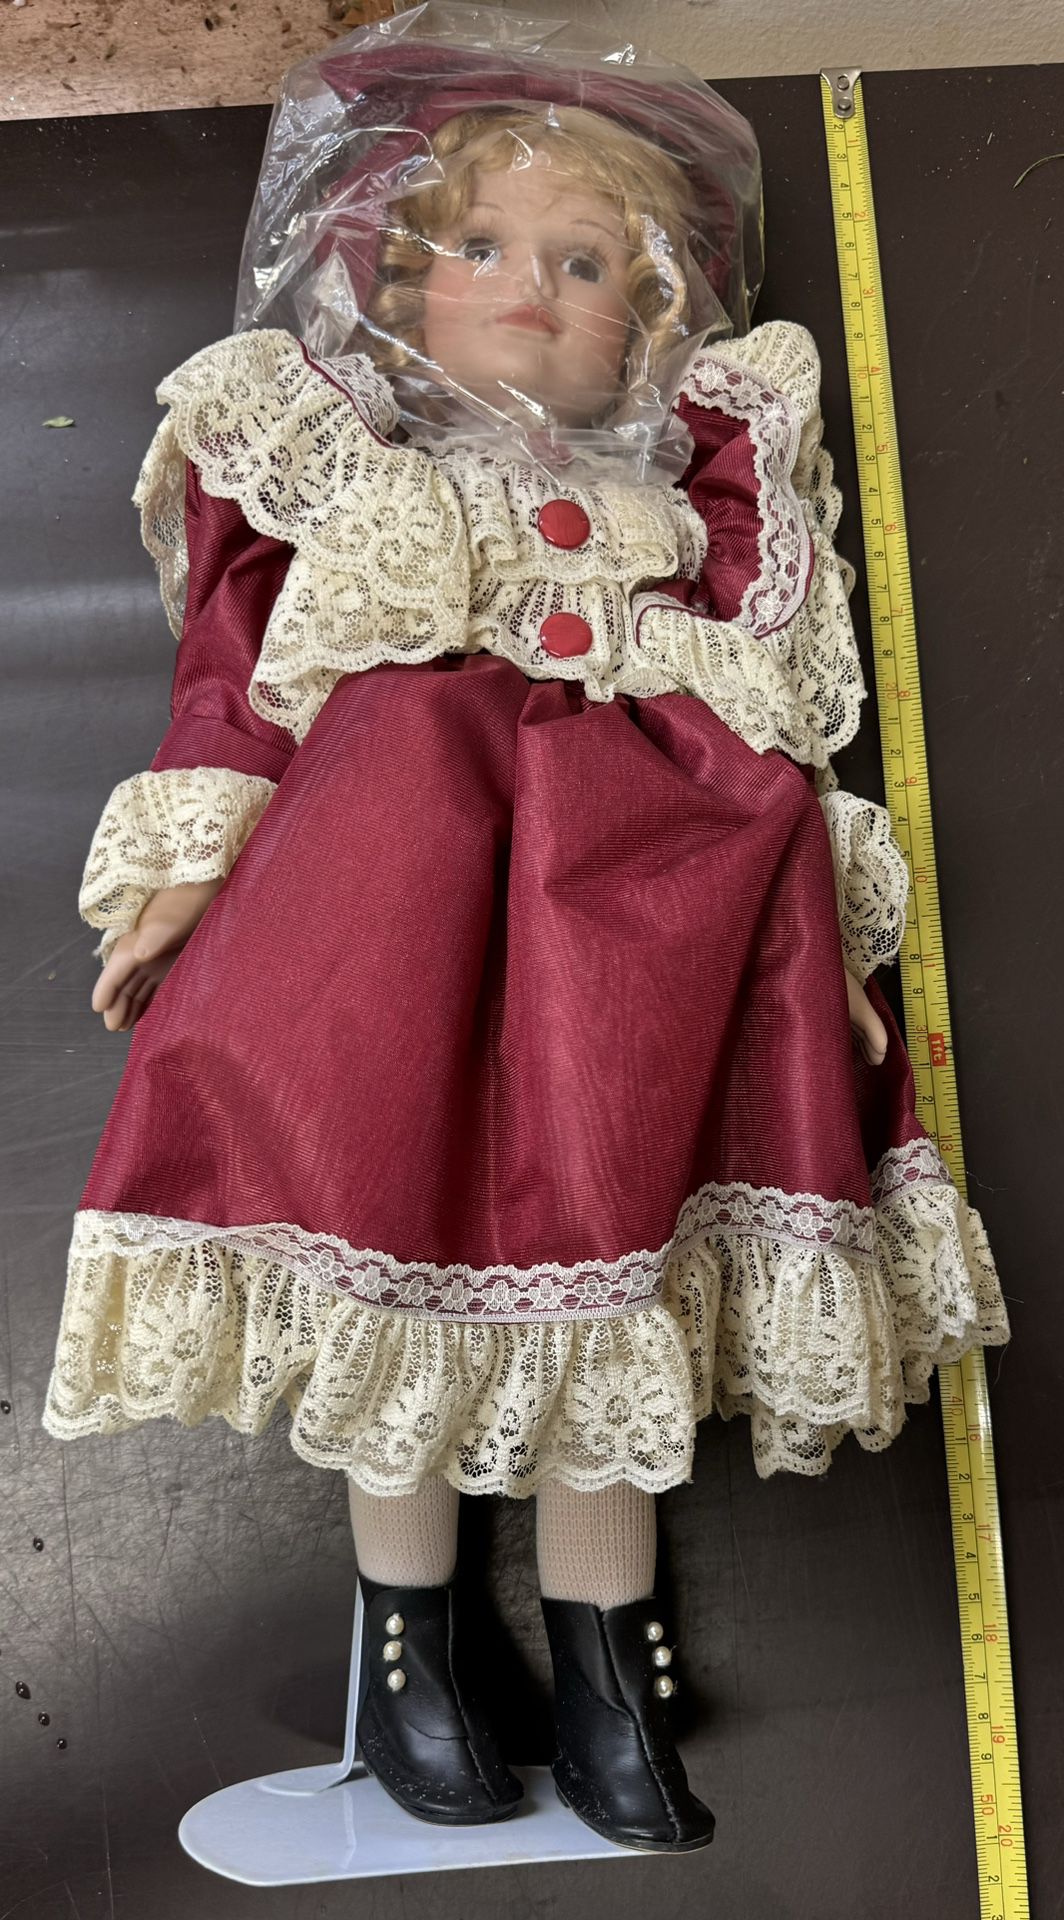 Vintage Doll 18” tall. 